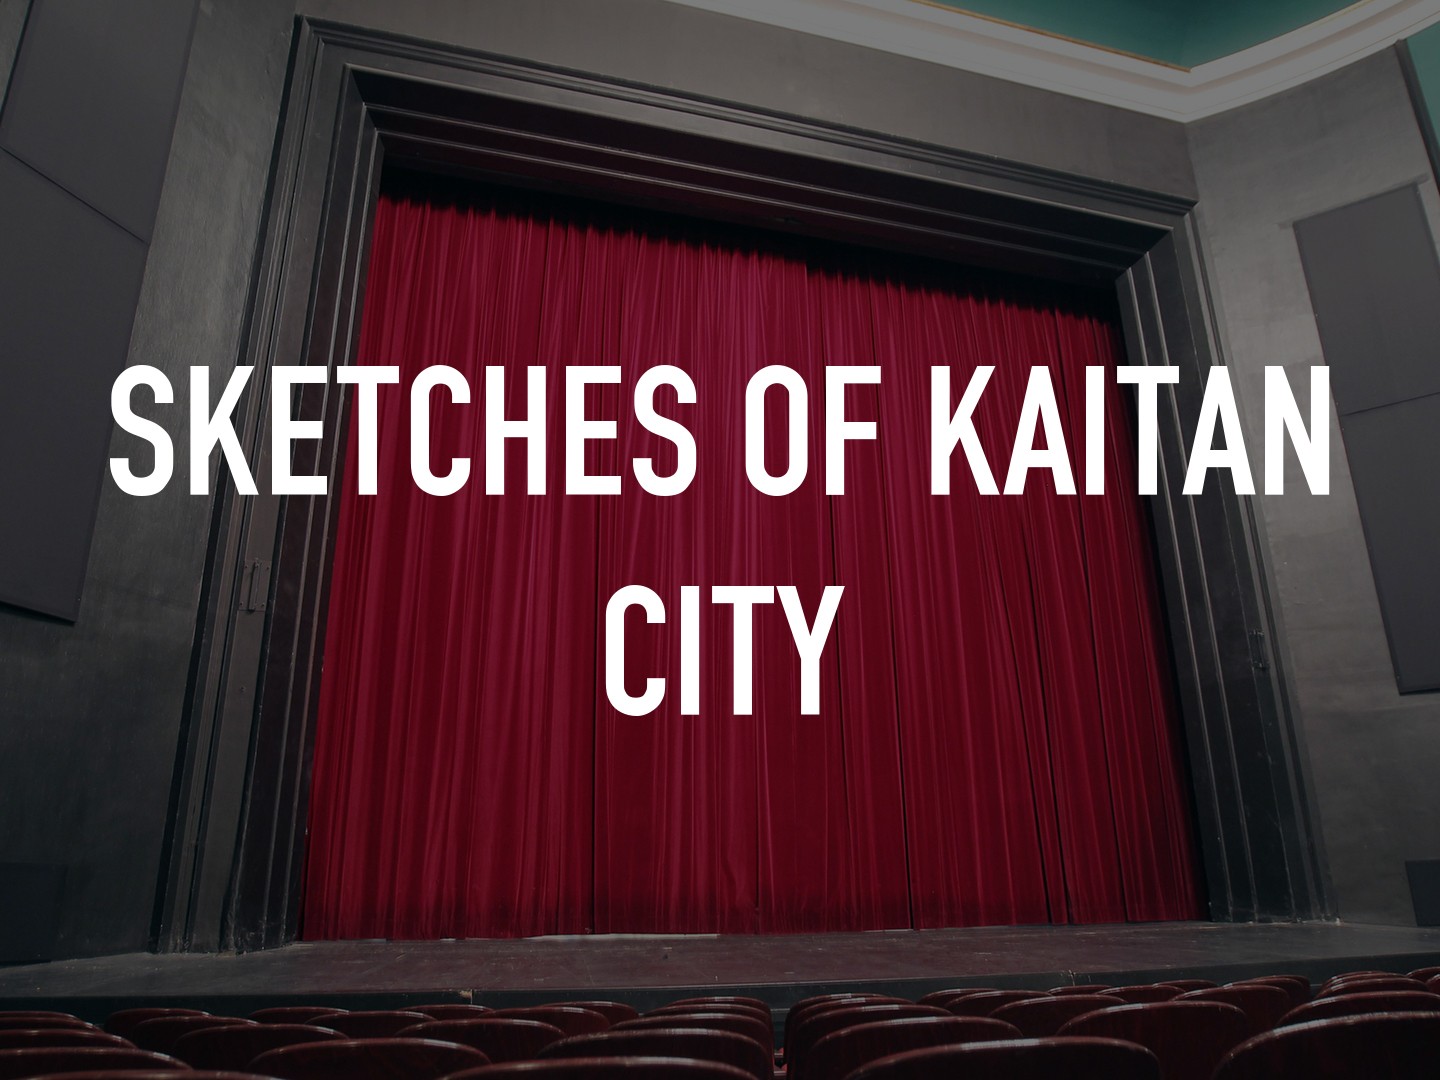 Jim O'rourke - Sketches of Kaitan City - YouTube